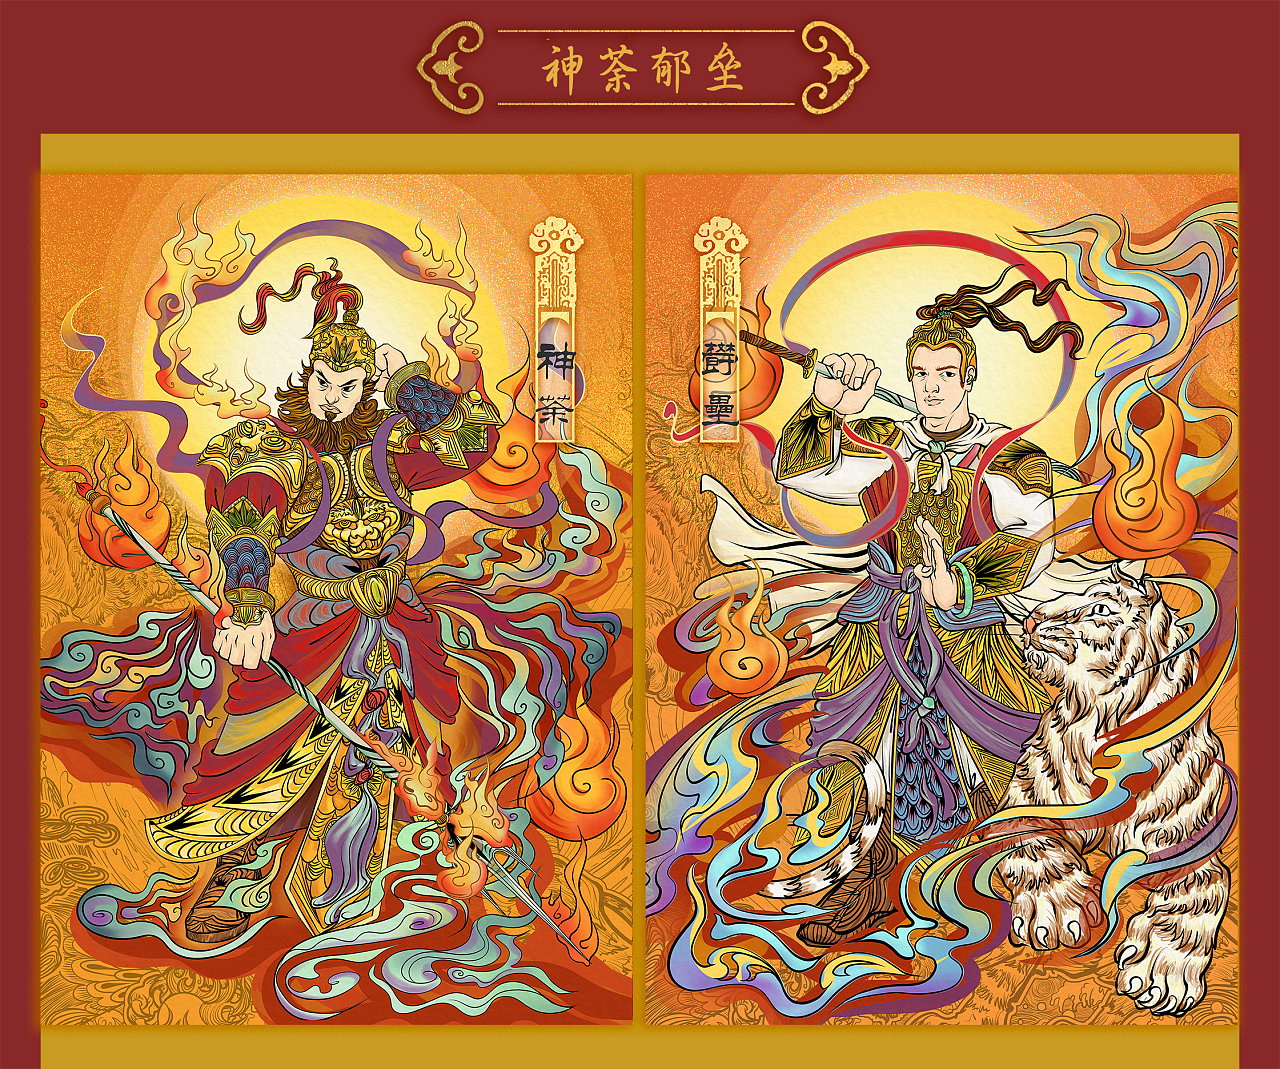 永乐宫壁画中青龙,白虎星君,与传统门神形象的对比